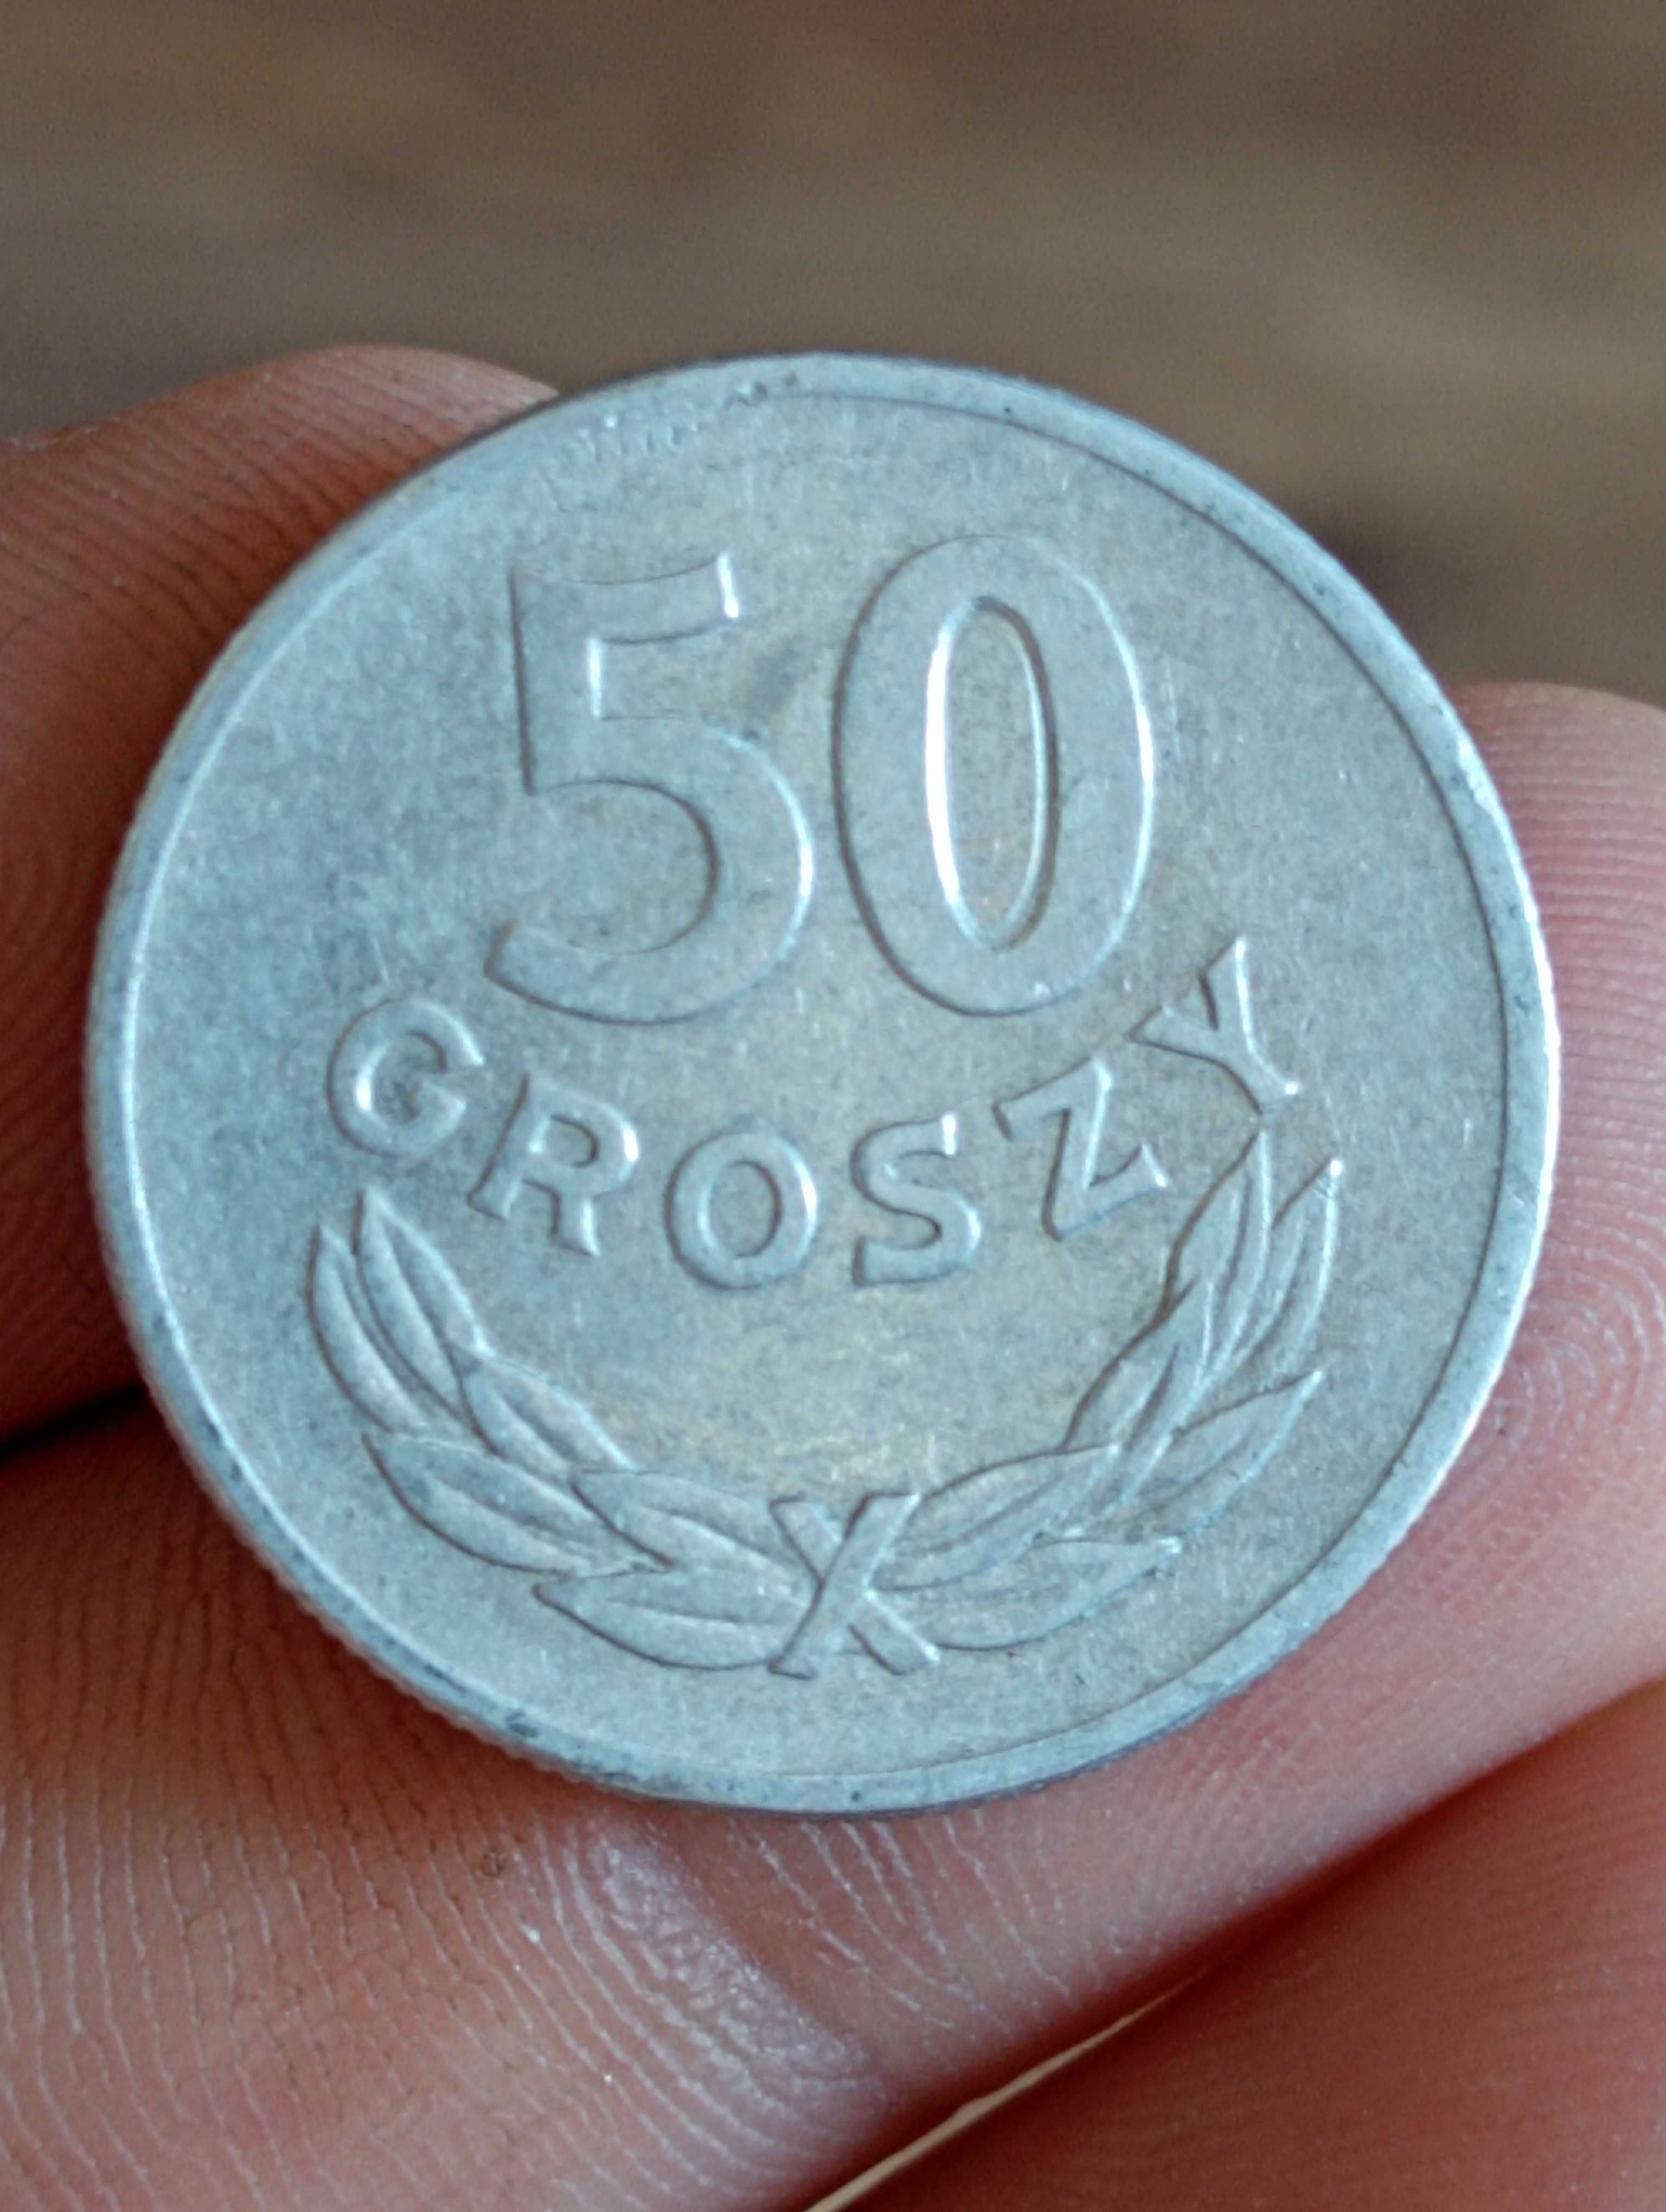 Sprzedam monete cc 50 groszy 1957 r